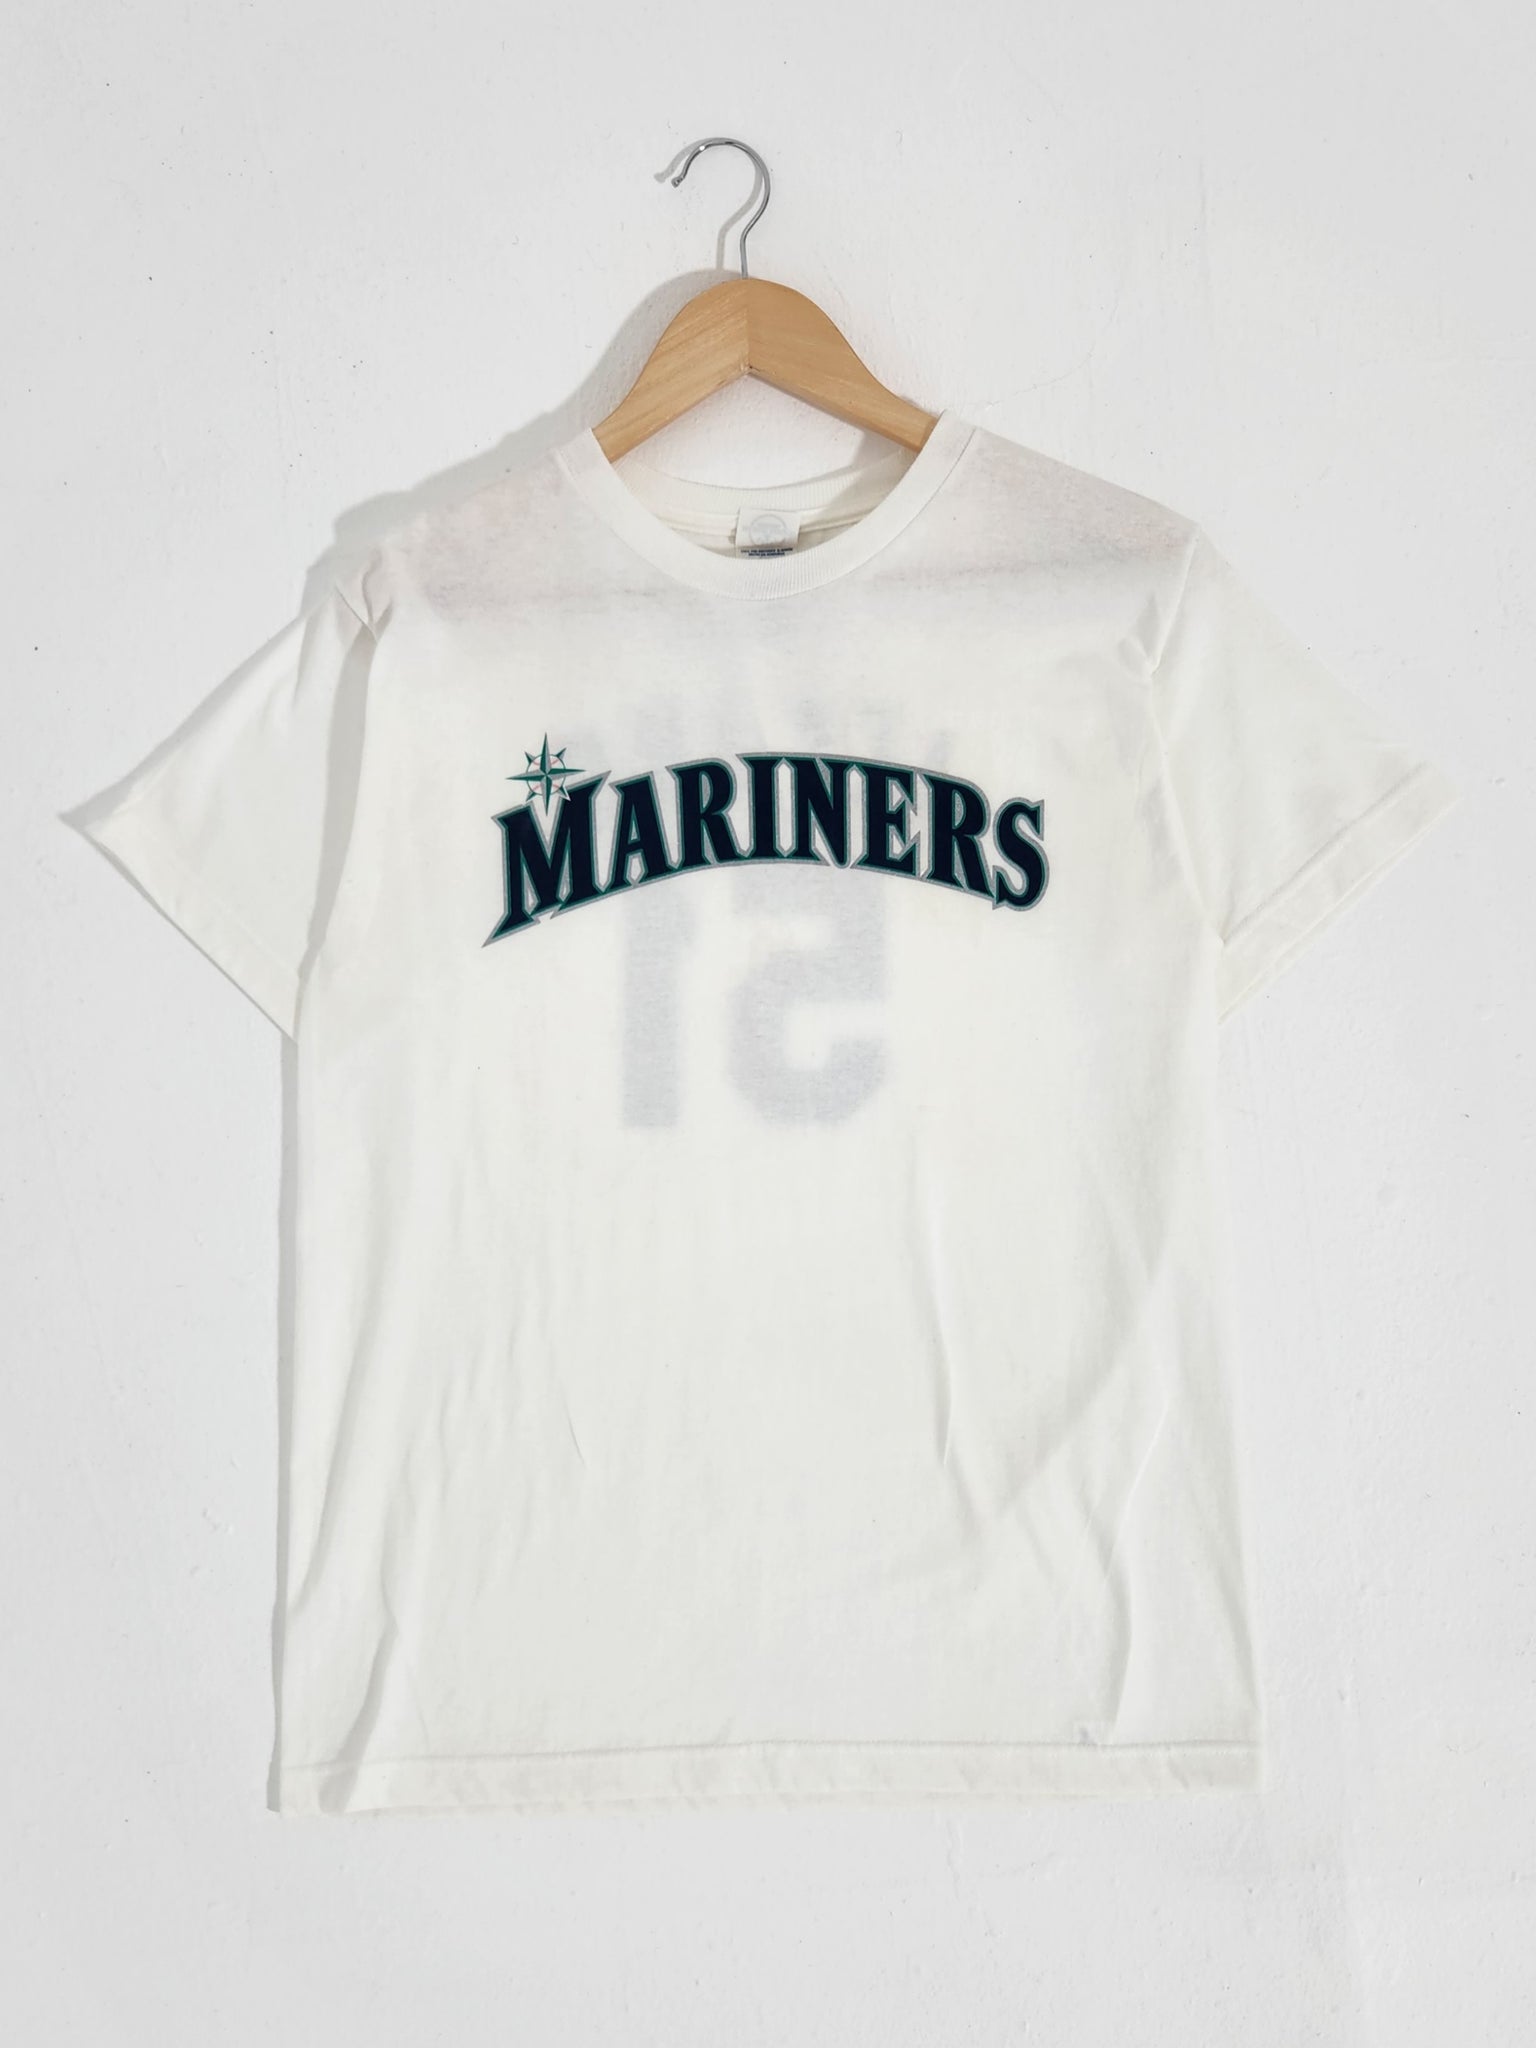 seattle mariners ichiro t shirt